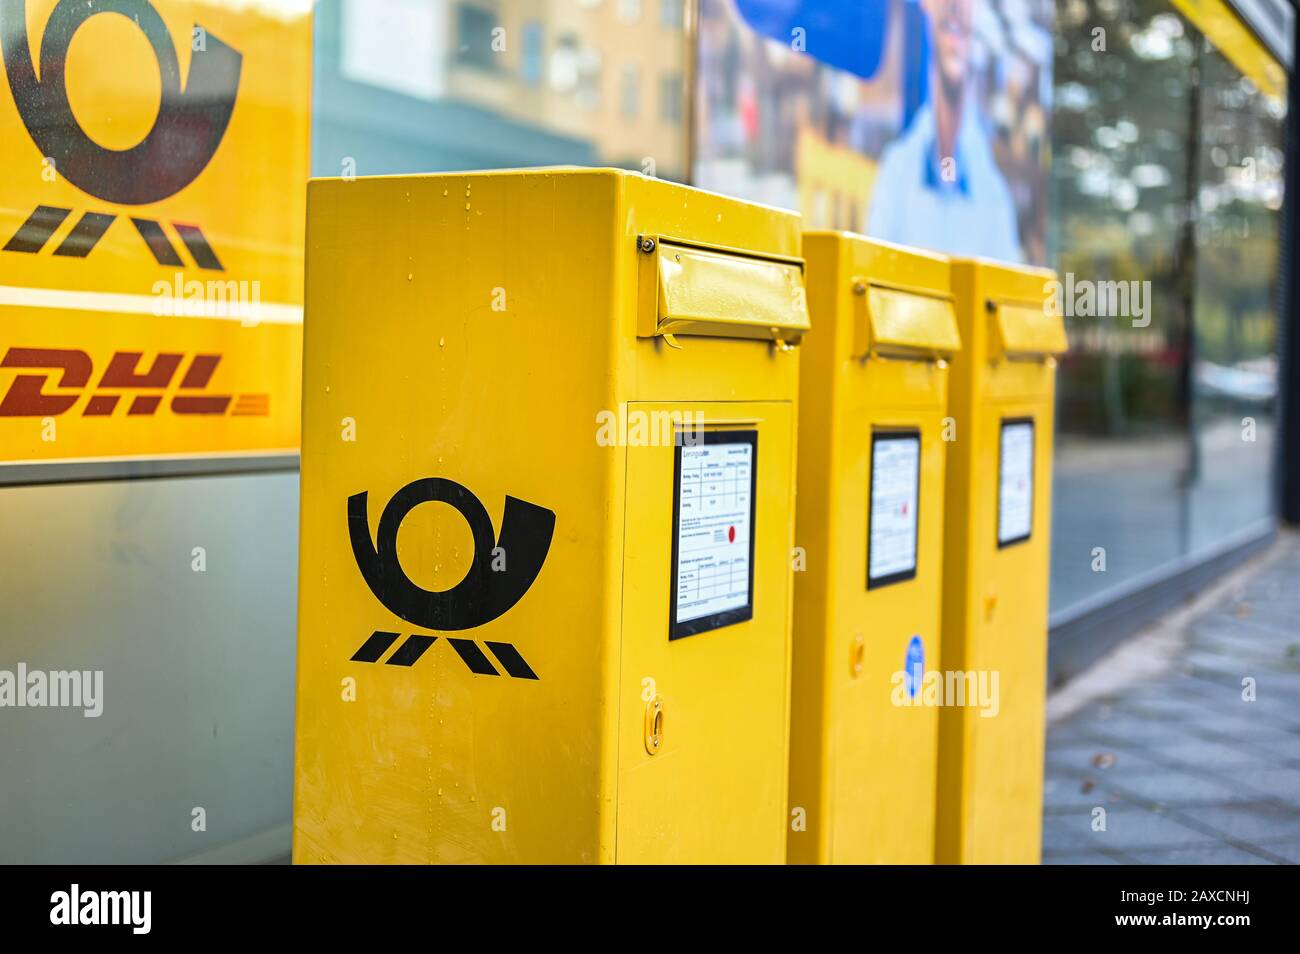 Berlin, Deutschland - 5. Oktober 2019: Mehrere Briefkästen mit dem Logo der  Deutschen Post in typischem Gelb auf einem Bürgersteig in Berlin,  Deutschland Stockfotografie - Alamy